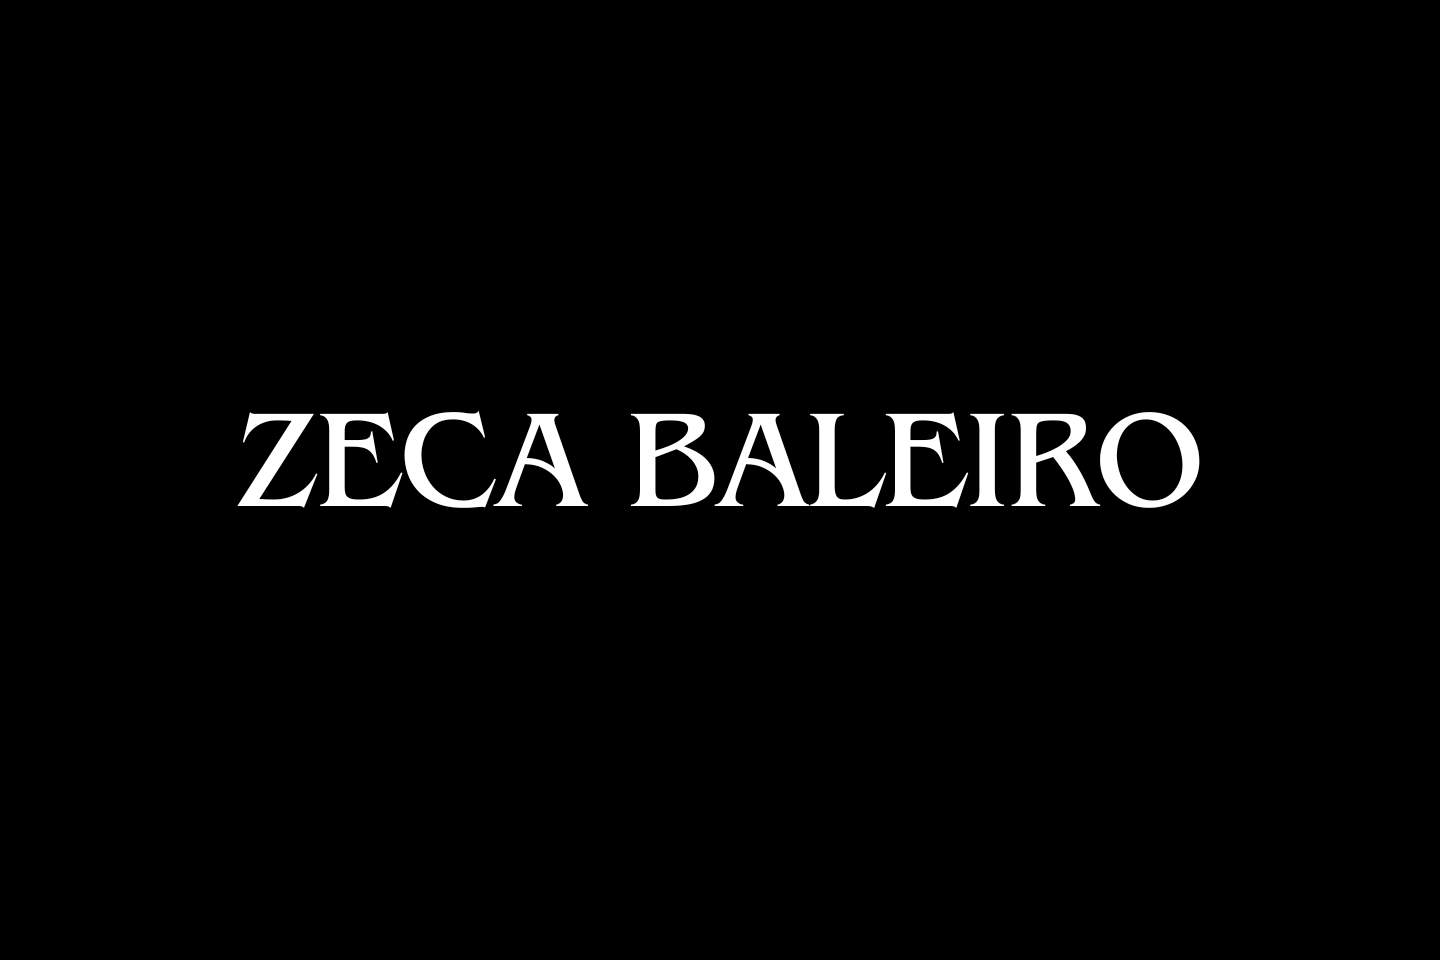 Zeca Baleiro